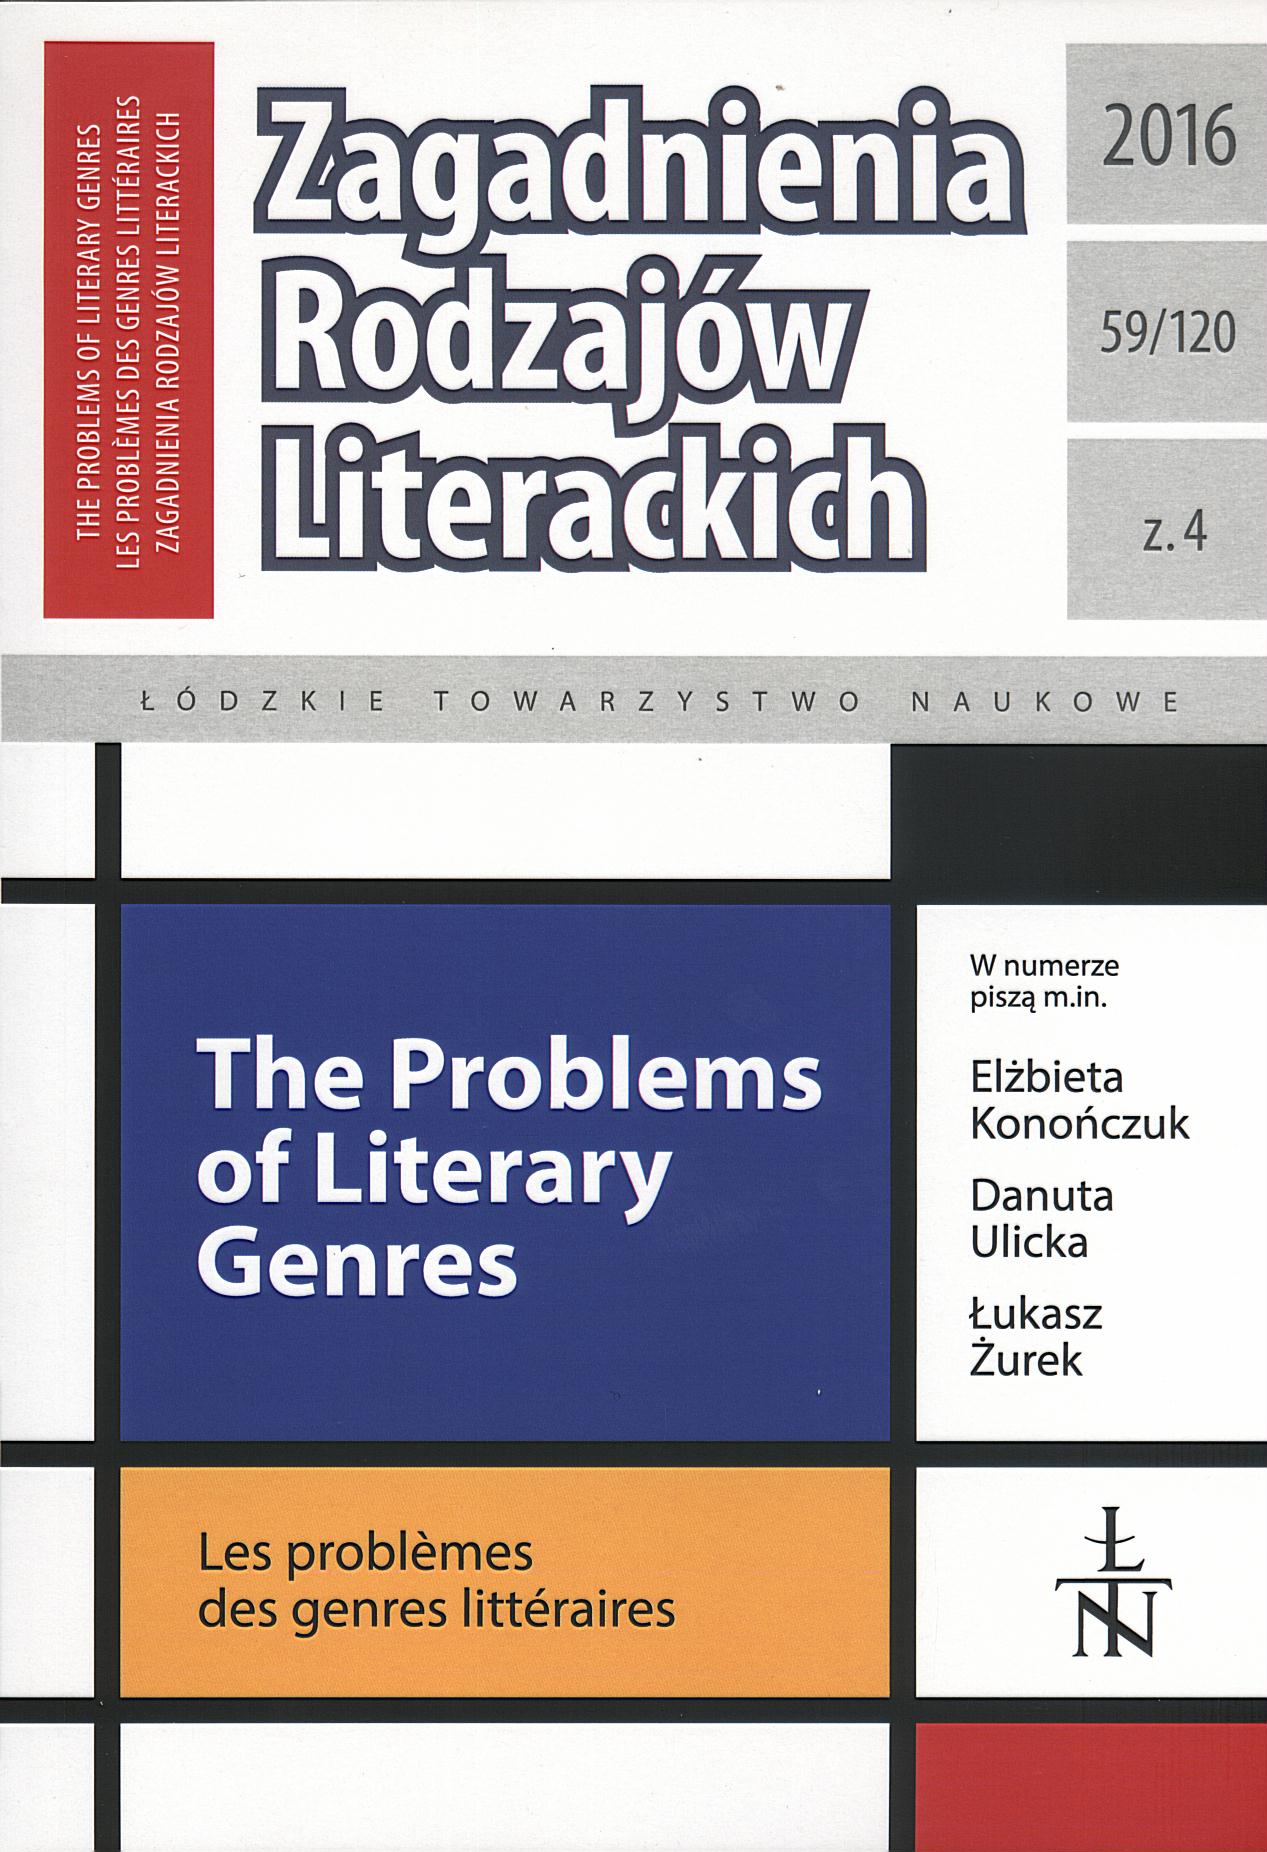 Stefan Szymutko’s Philological Practices – Reconnaissance Cover Image